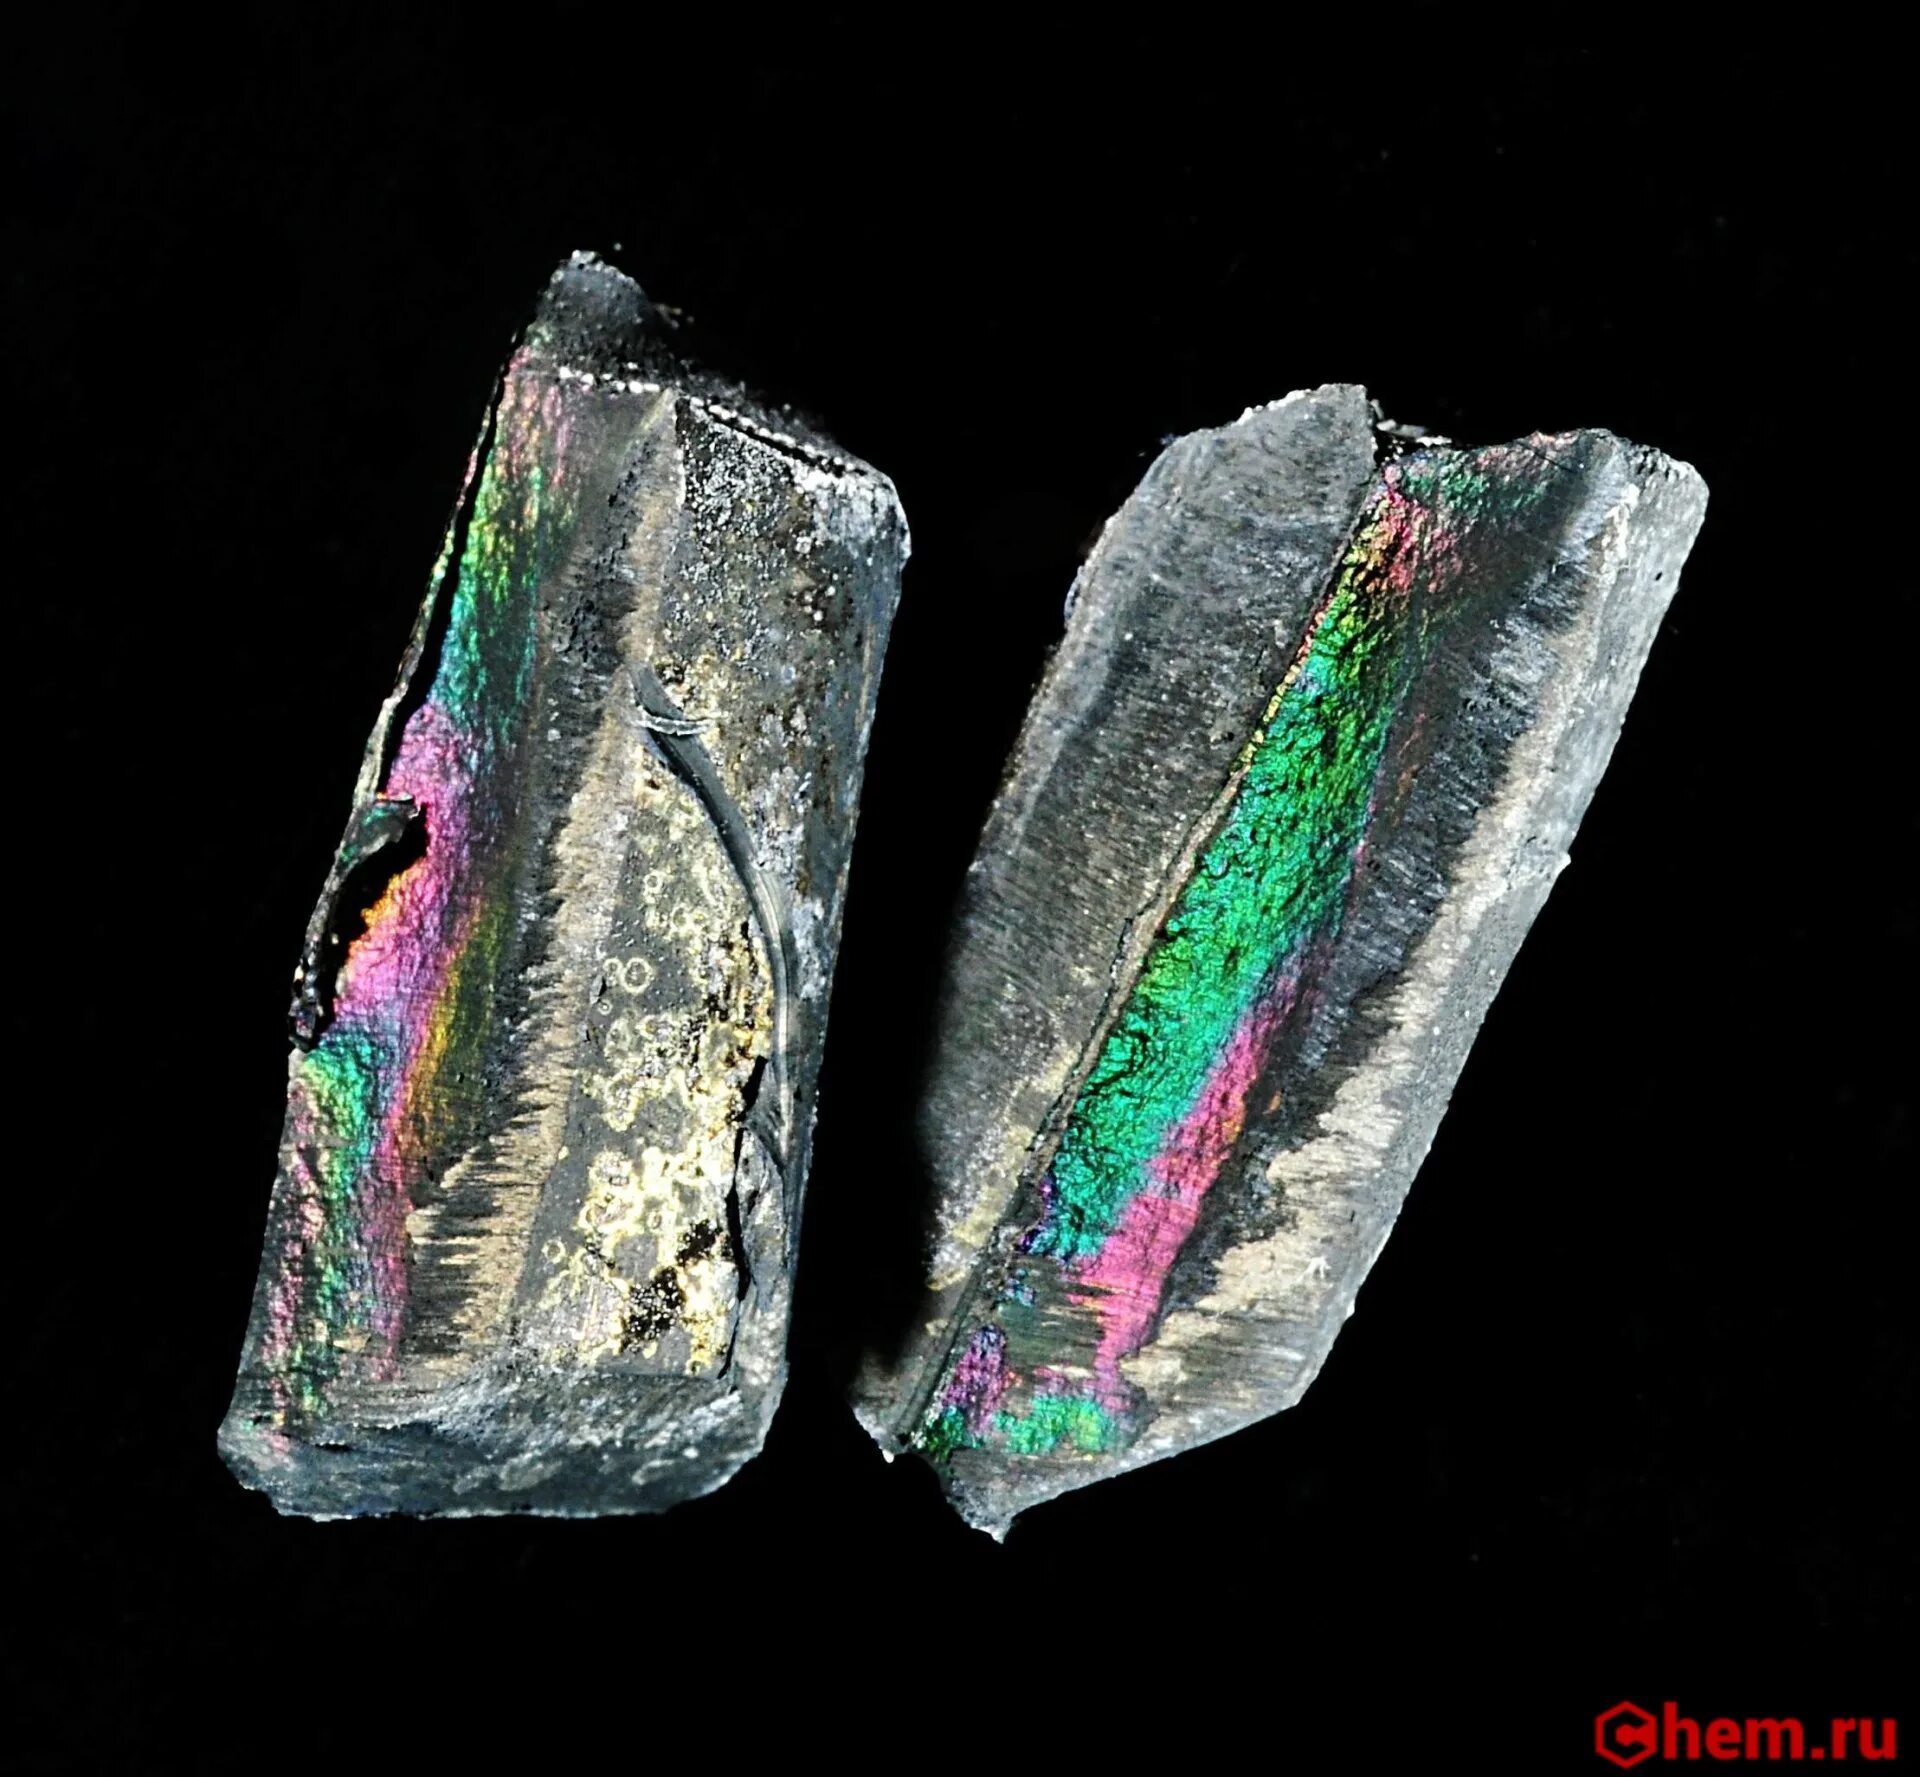 Lithium fabric 1.20 1. Литий металл. Li литий. Добыча лития в Боливии. Литиевые минералы.